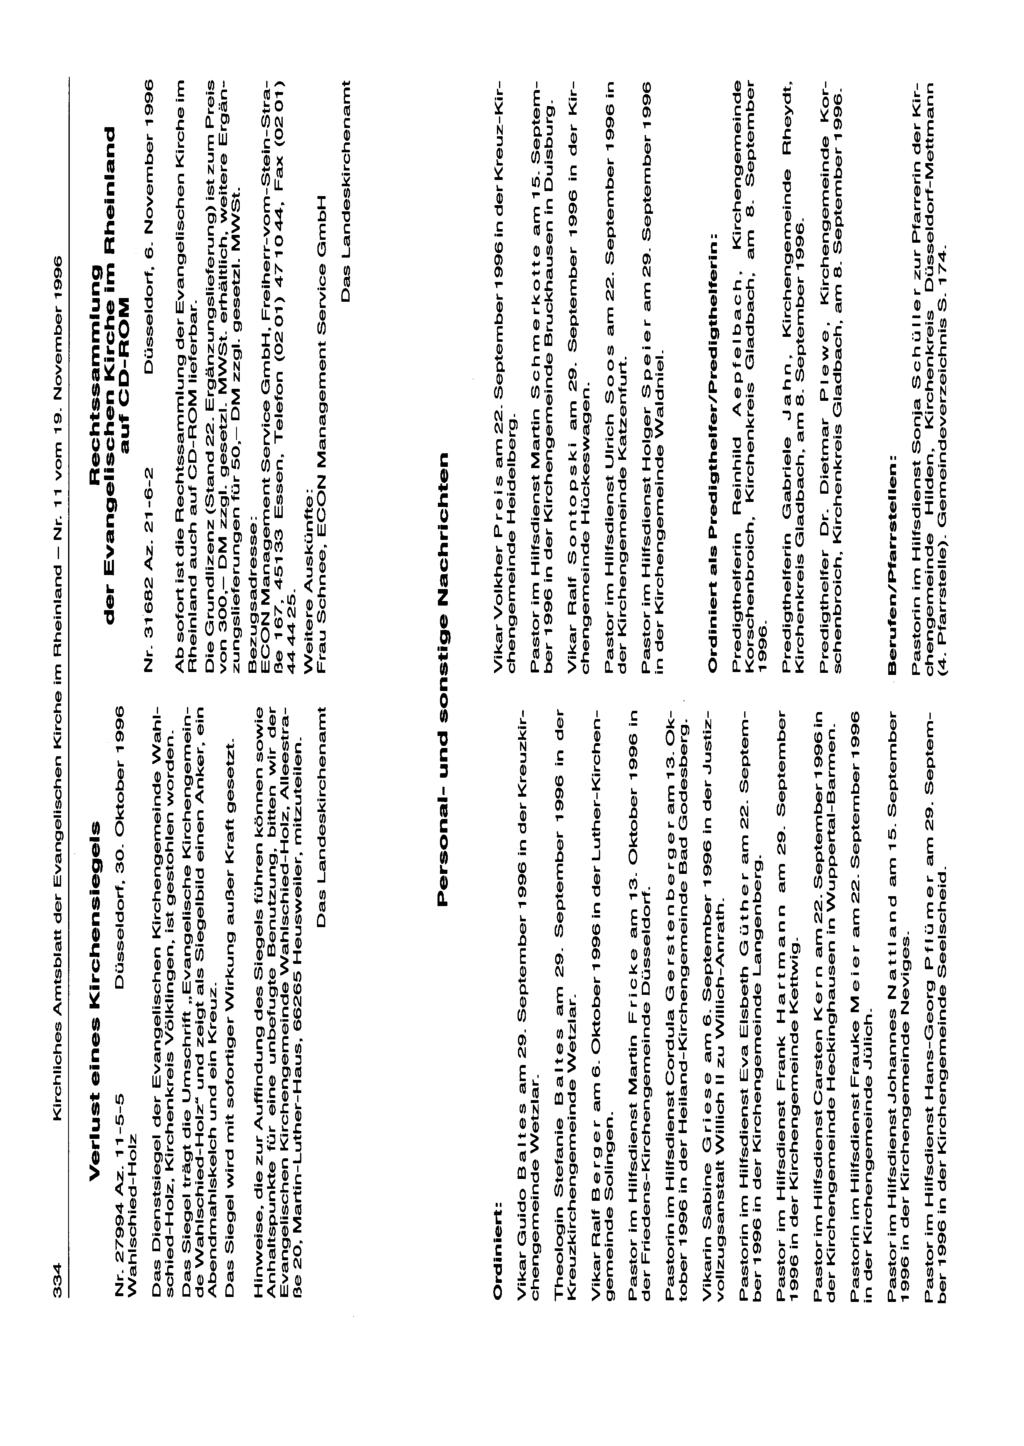 334 Kirchliches Amtsblatt der Evangelischen Kirche im Rheinland - Nr. 11 vom 19. November 1996 Nr. 27994 Az. 11-5-5 Wahlschied-Holz Verlust eines Kirchensiegels Düsseldorf, 30.